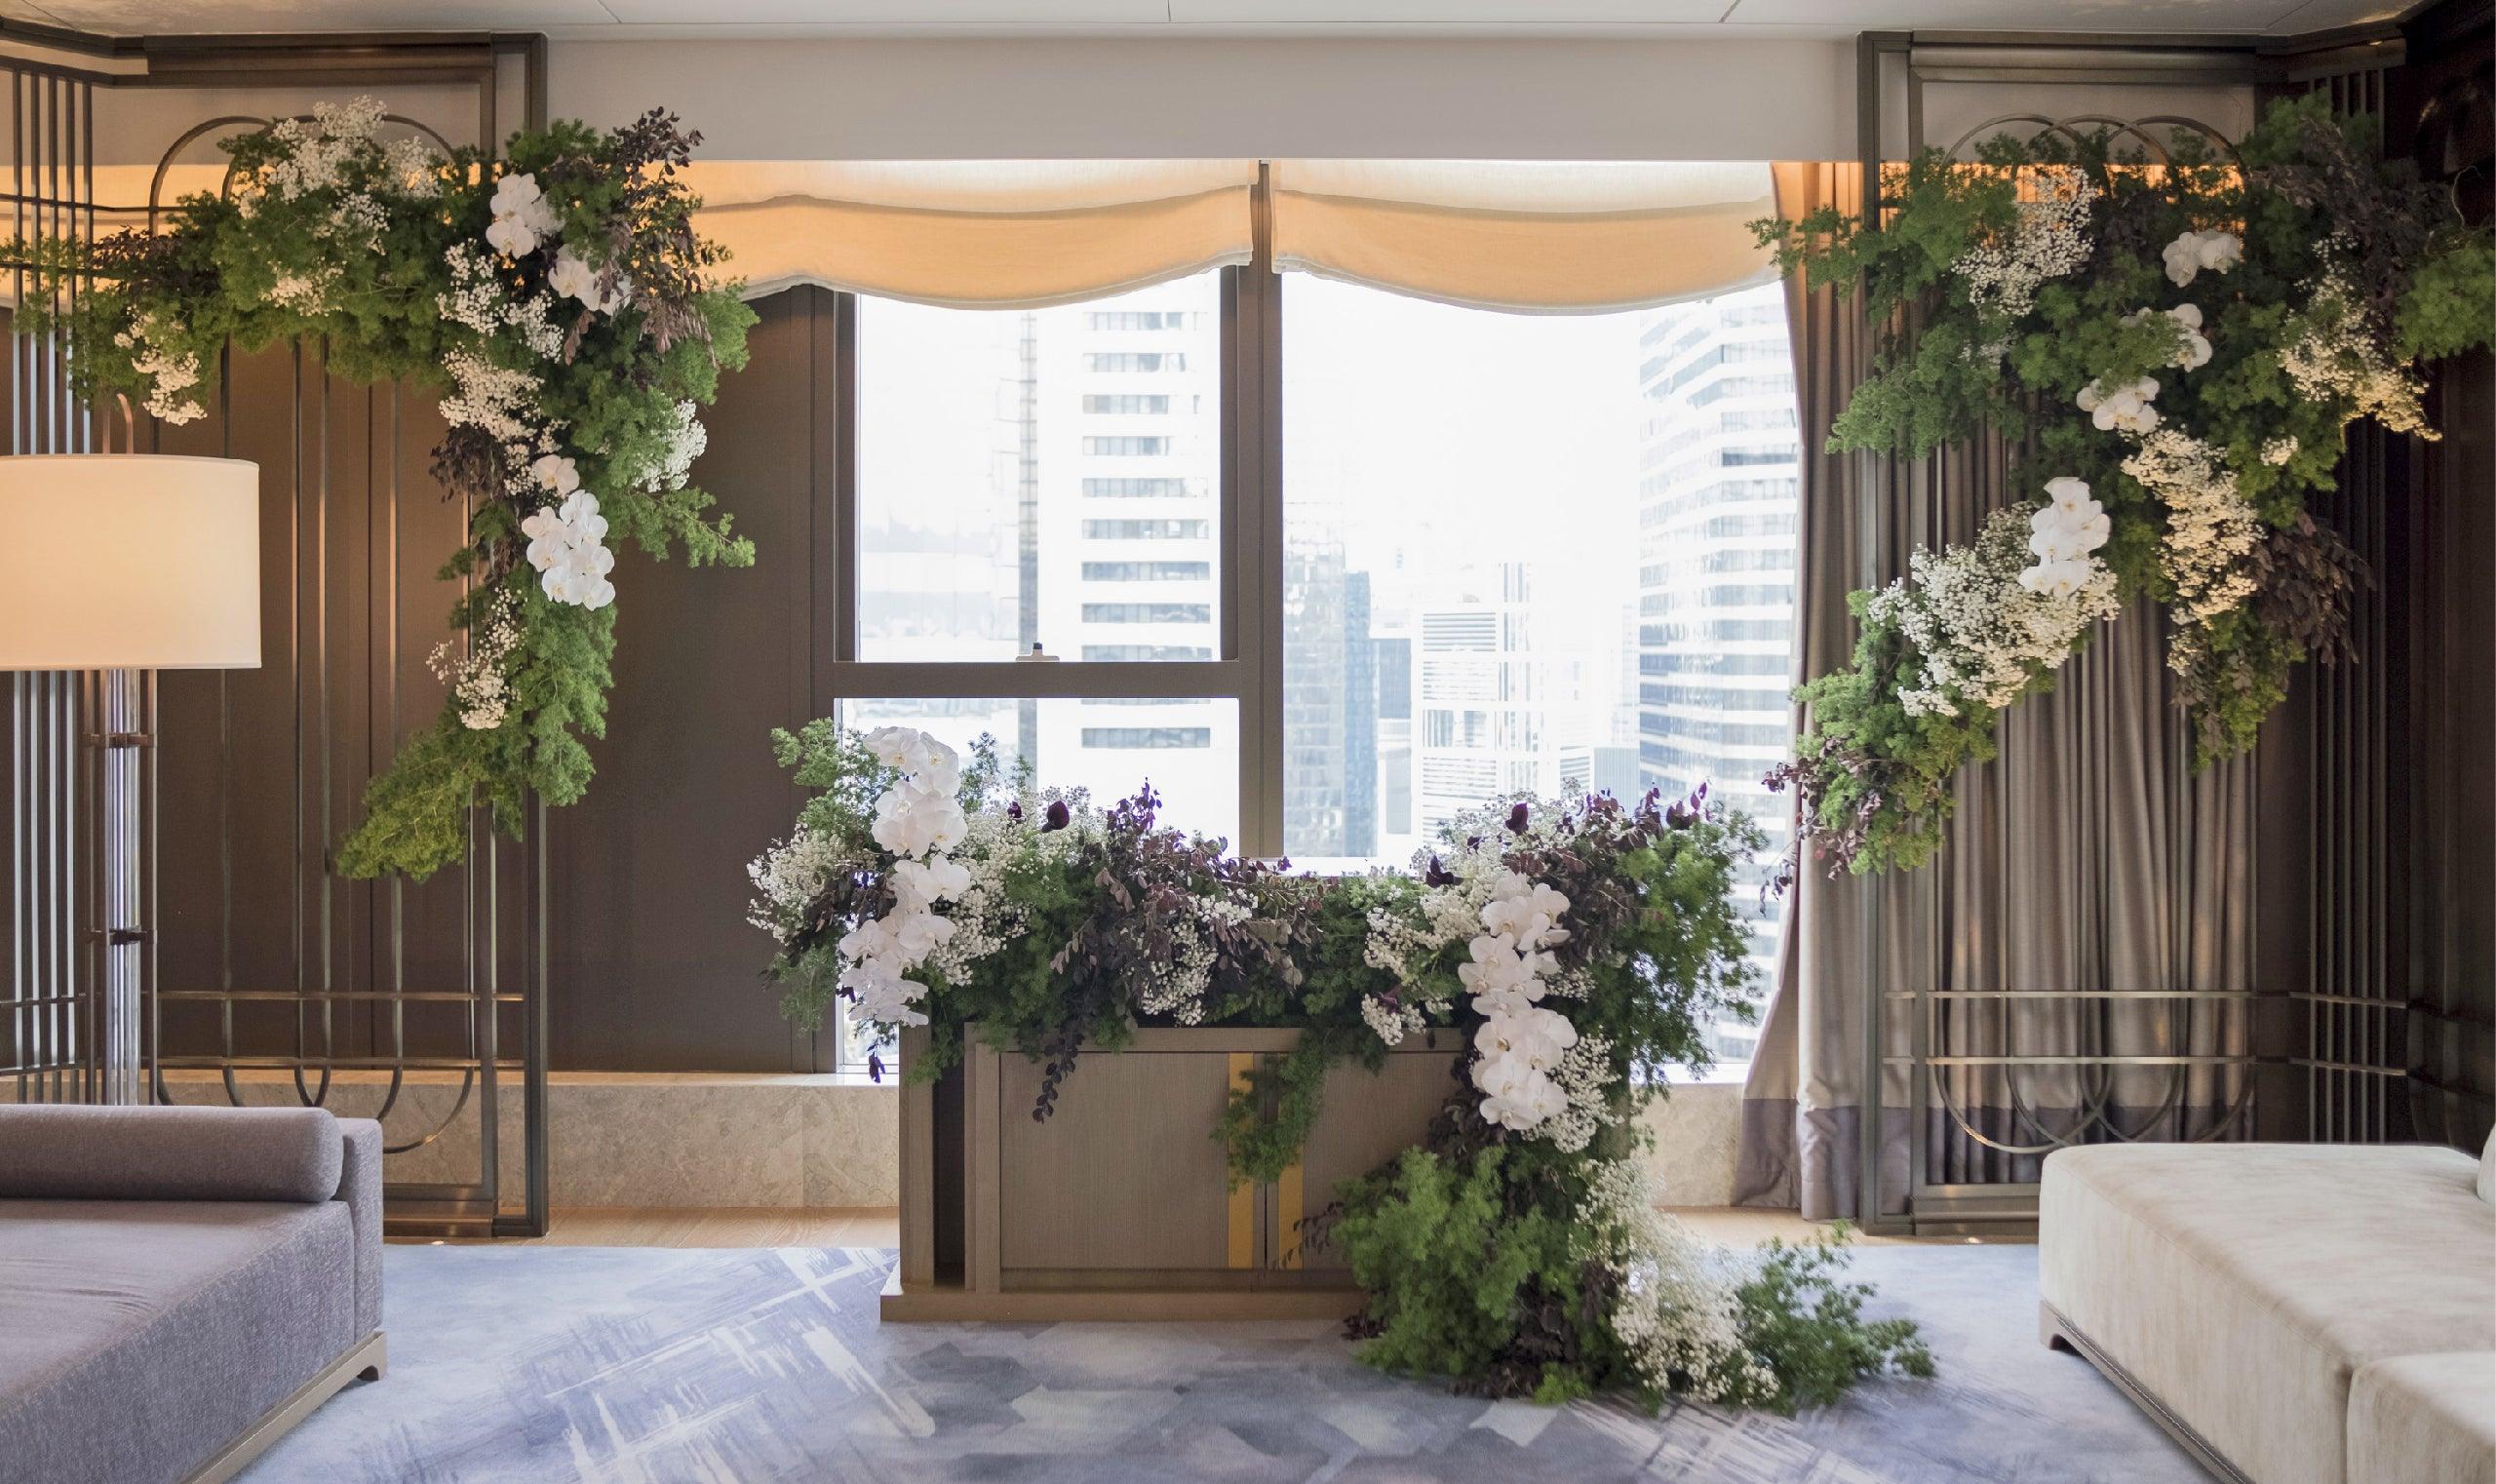 Kristy & Kelvin's Wedding at St. Regis Hong Kong - Ellermann Flowers